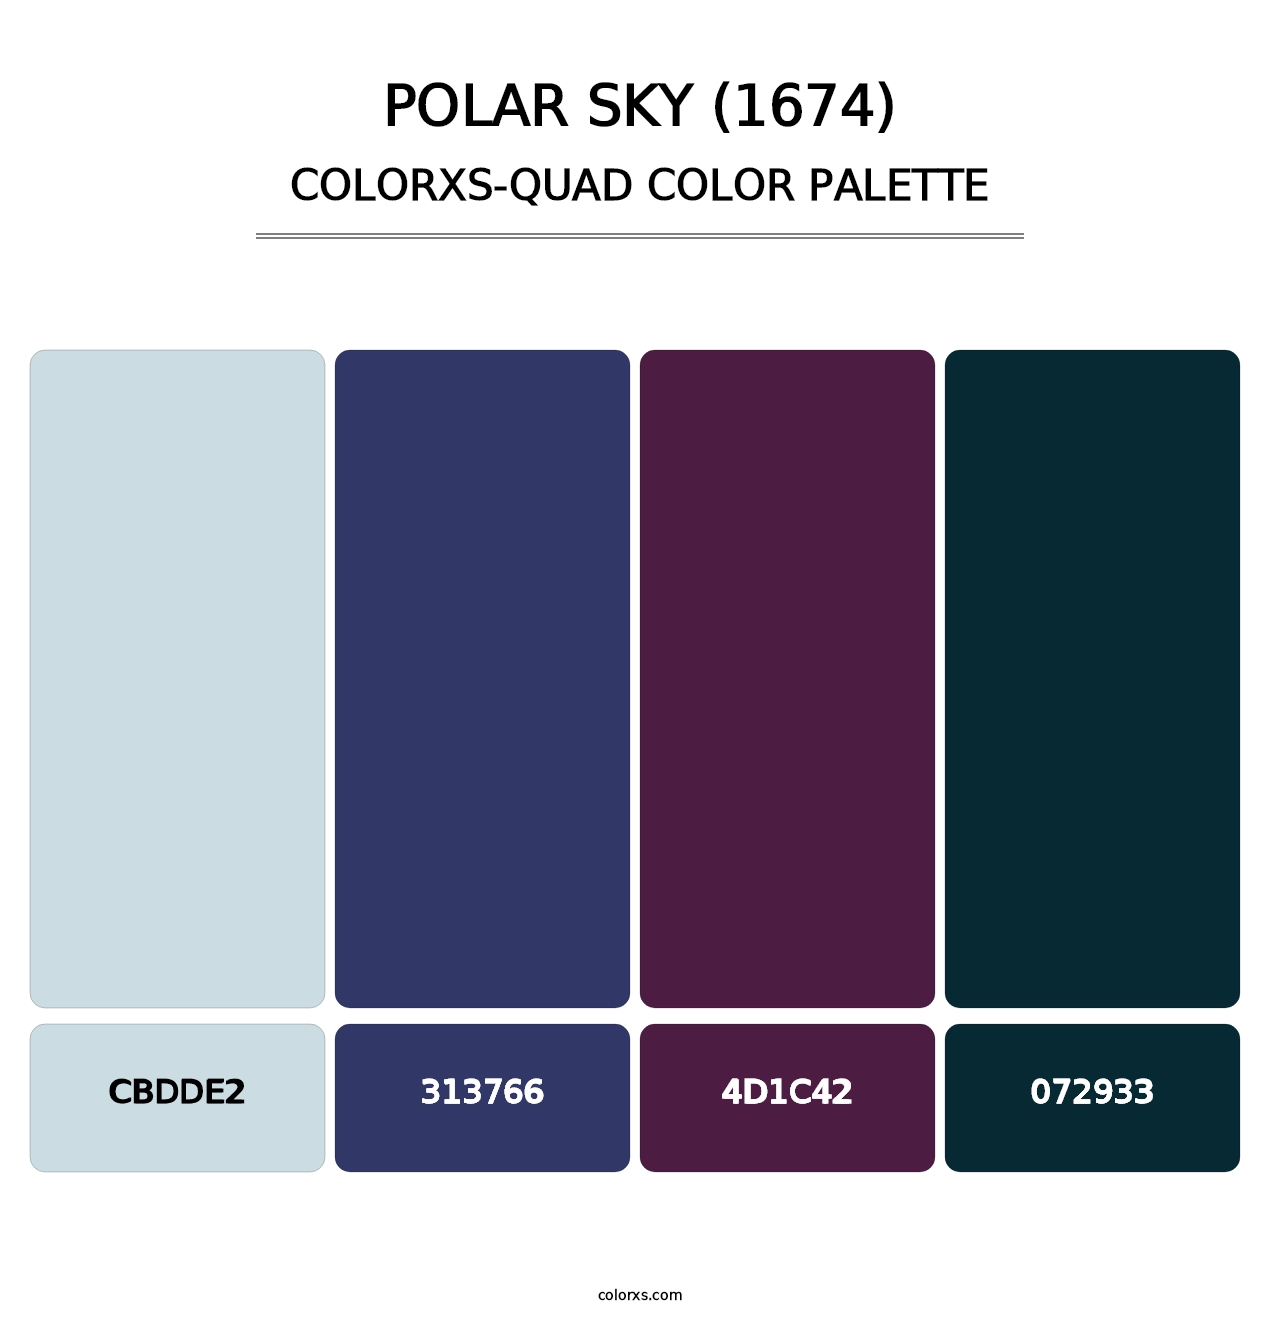 Polar Sky (1674) - Colorxs Quad Palette